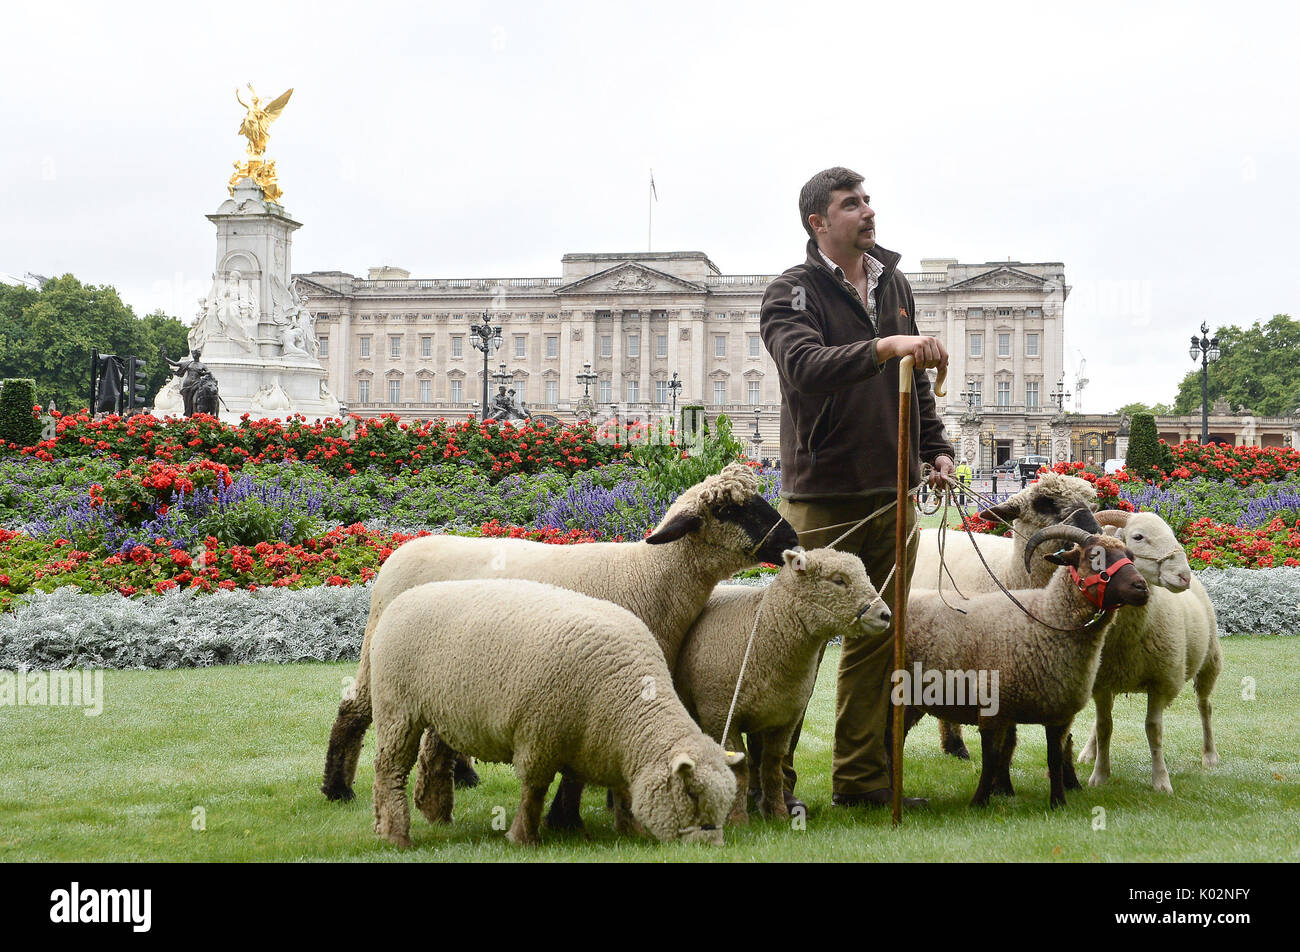 Tom Davis, gestionnaire de Mudchute farm, avec des moutons dans la région de Green Park, à Londres, qui sont là pour un essai de conservation qui voit les parcs royaux Mission : L'équipe d'invertébrés à la Rare Breeds Survival Trust et Mudchute Farm. Banque D'Images